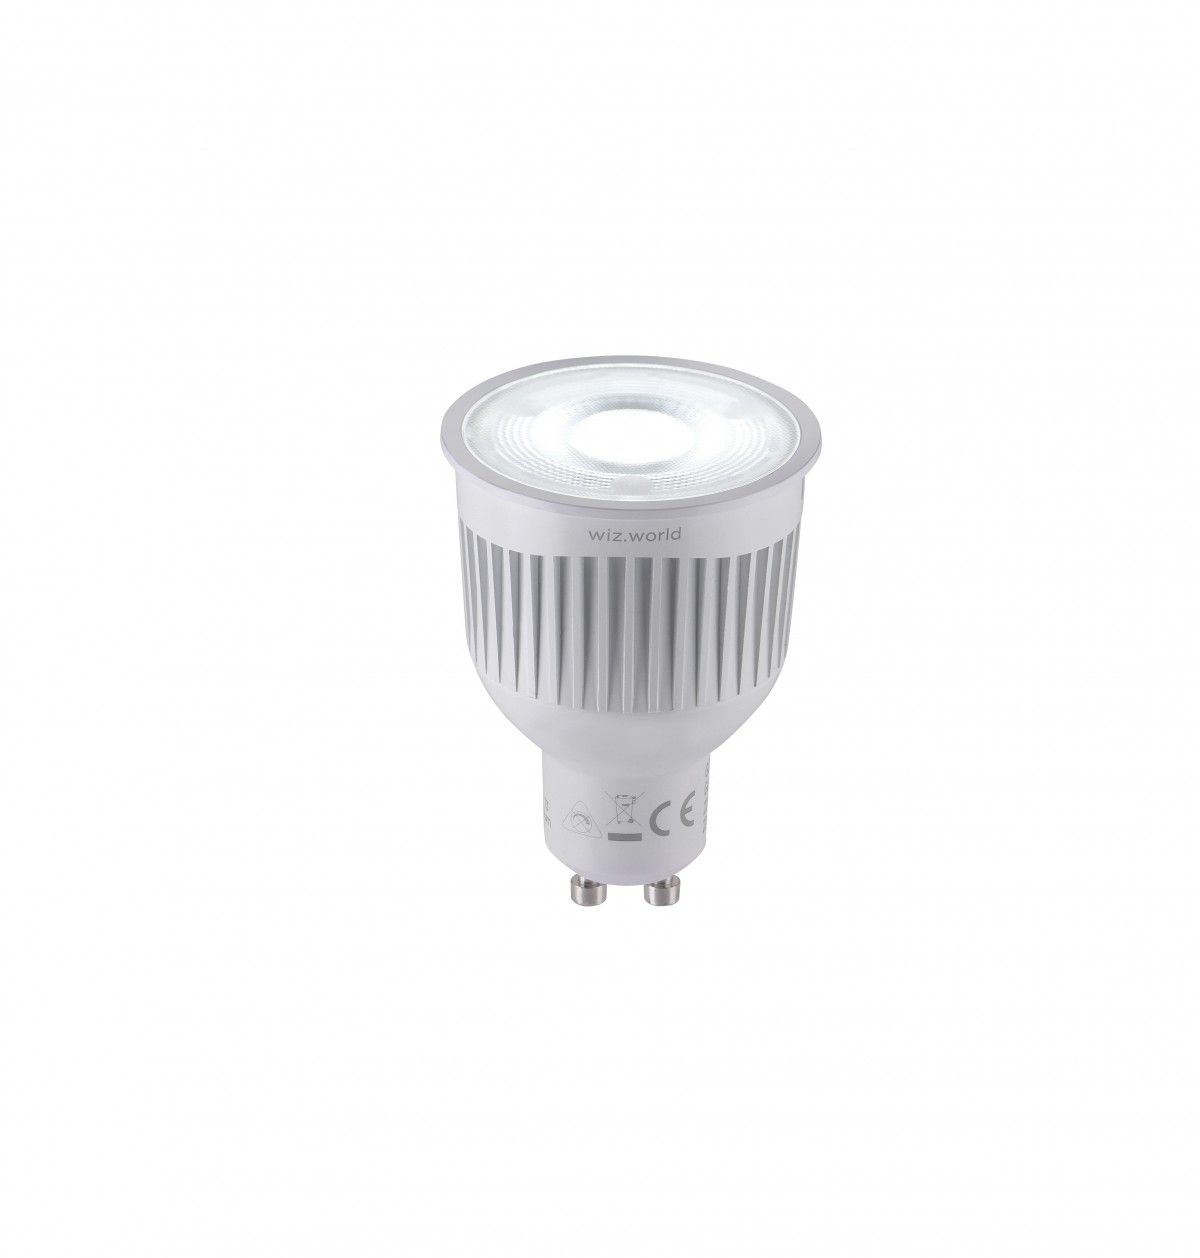 Trio 956-88 inteligentní LED žárovka 1x6,5W | GU10 | 360lm | 2200-6500K | RGBW - stmívatelná, nastavení teploty osvětlení, technologie WiZ, dálkové ovládání, paměťová funkce, bílá - Dekolamp s.r.o.